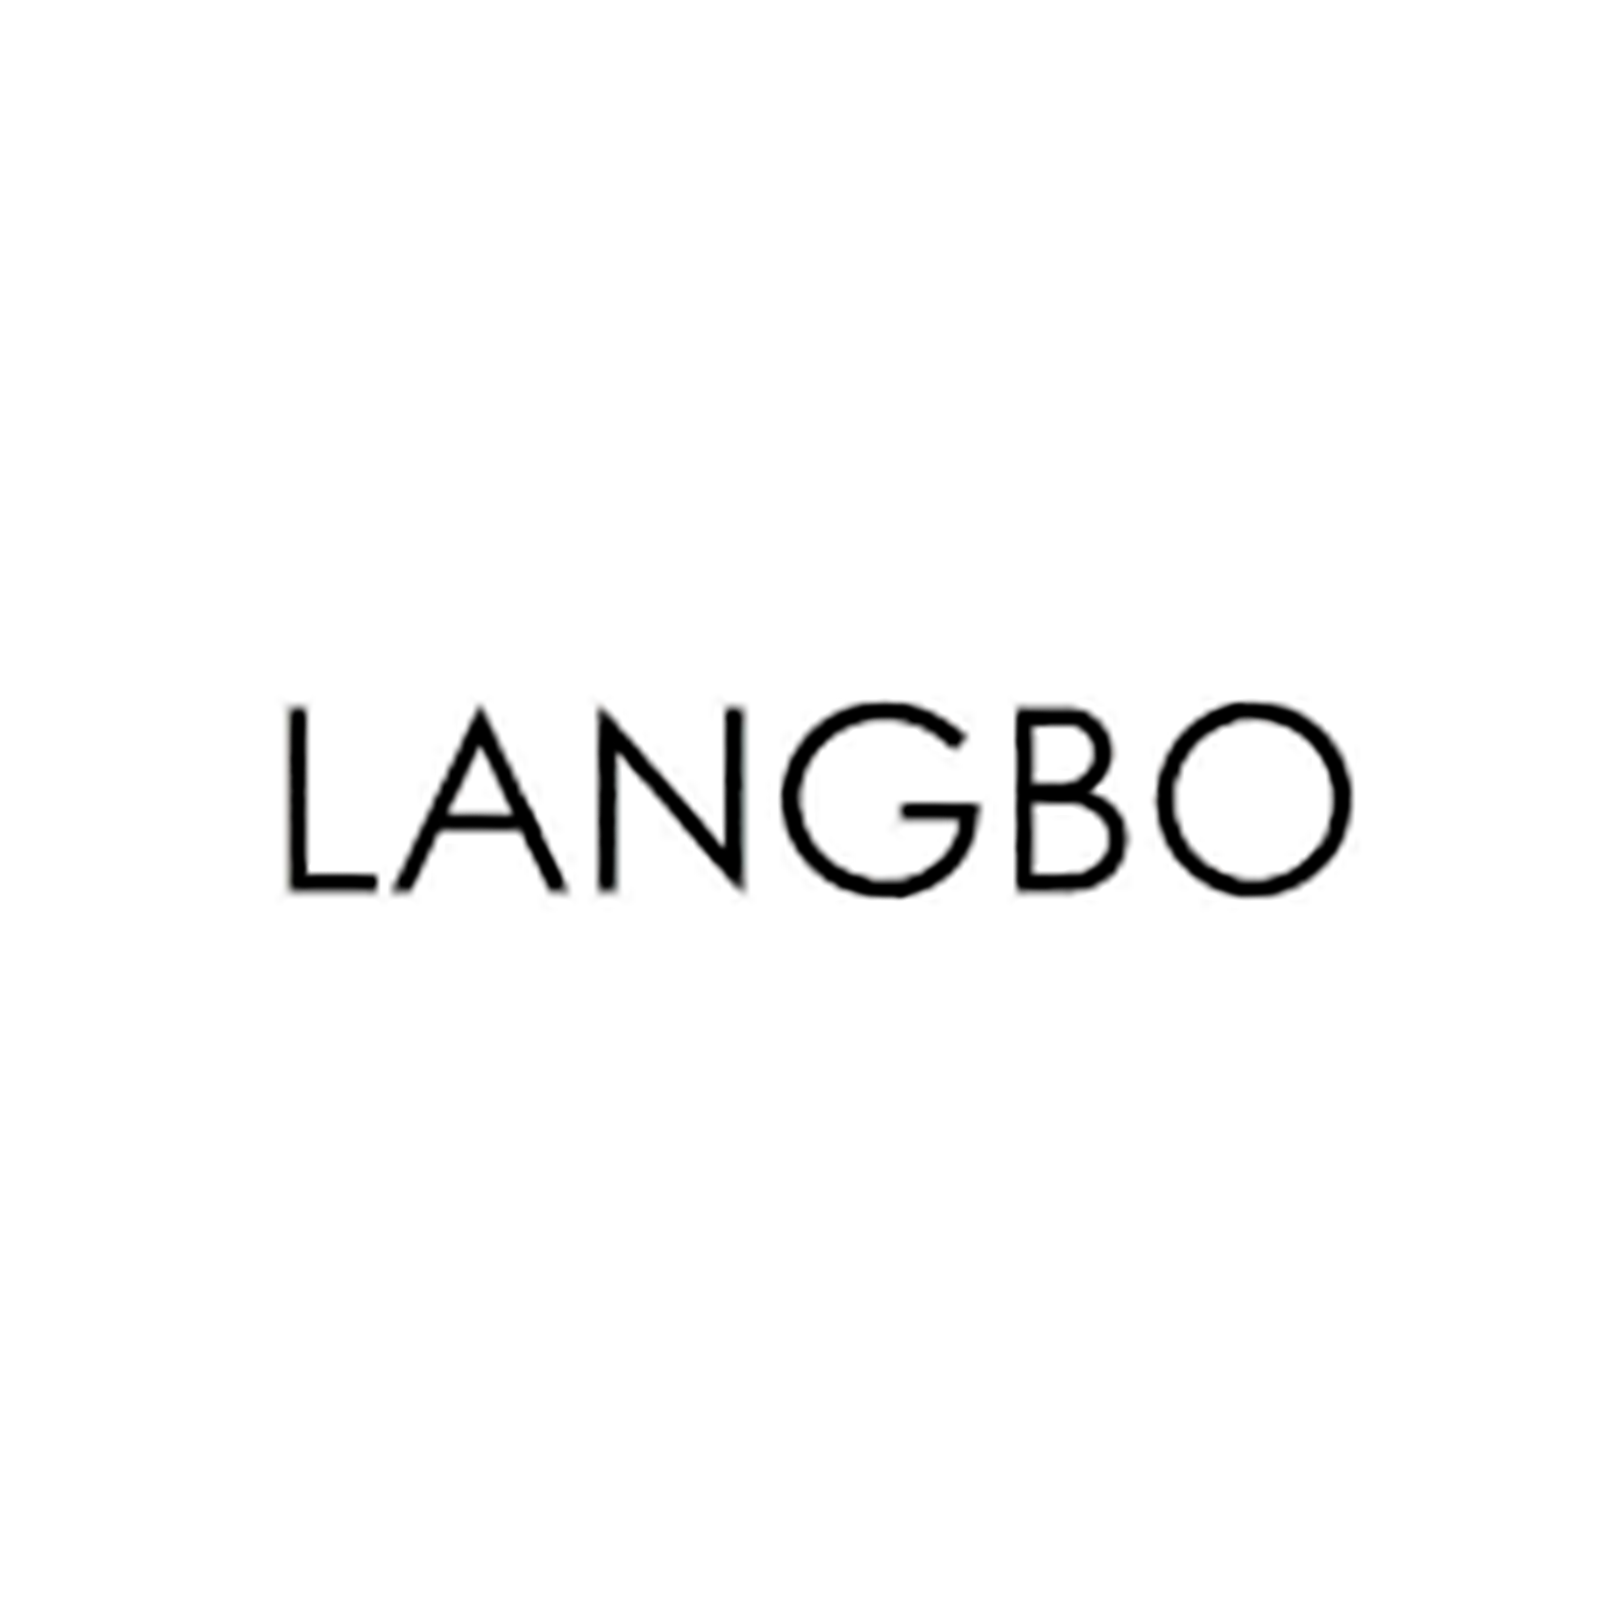 langbo design logo